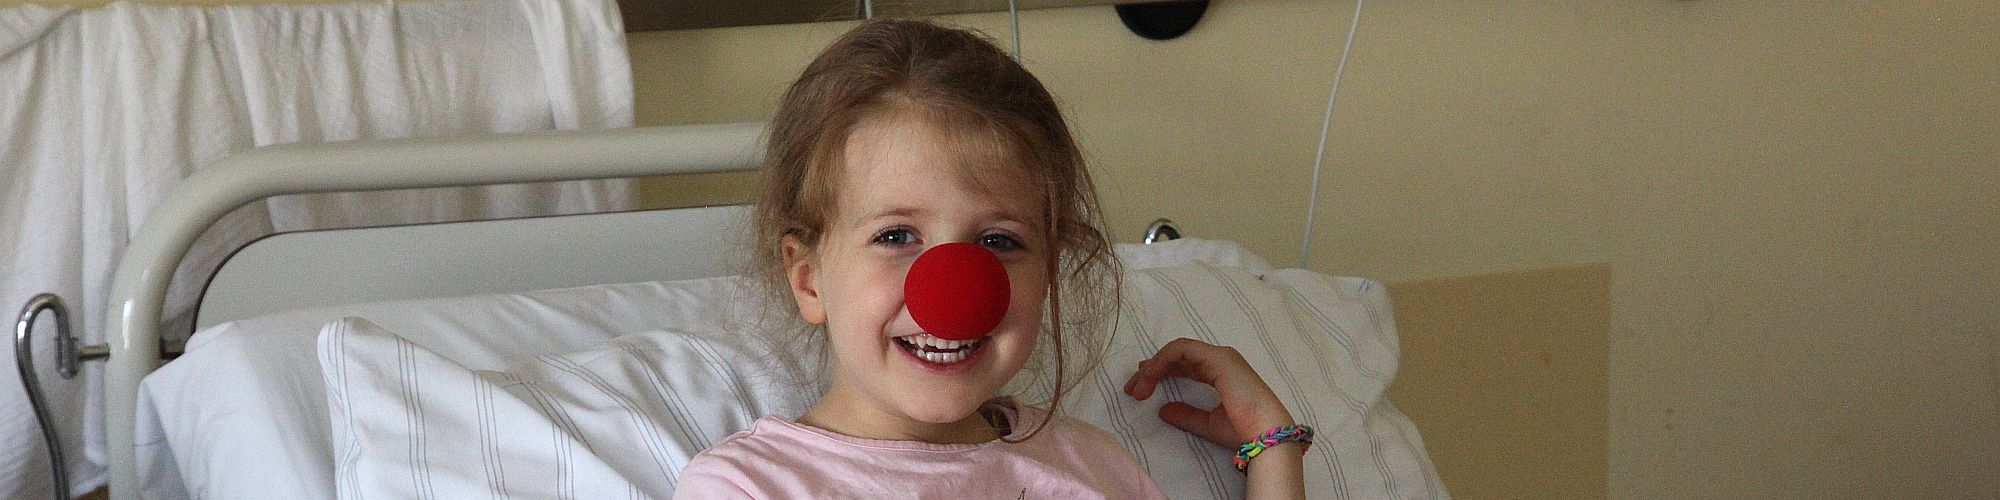 Kind im Krankenhaus mit Clownsnase